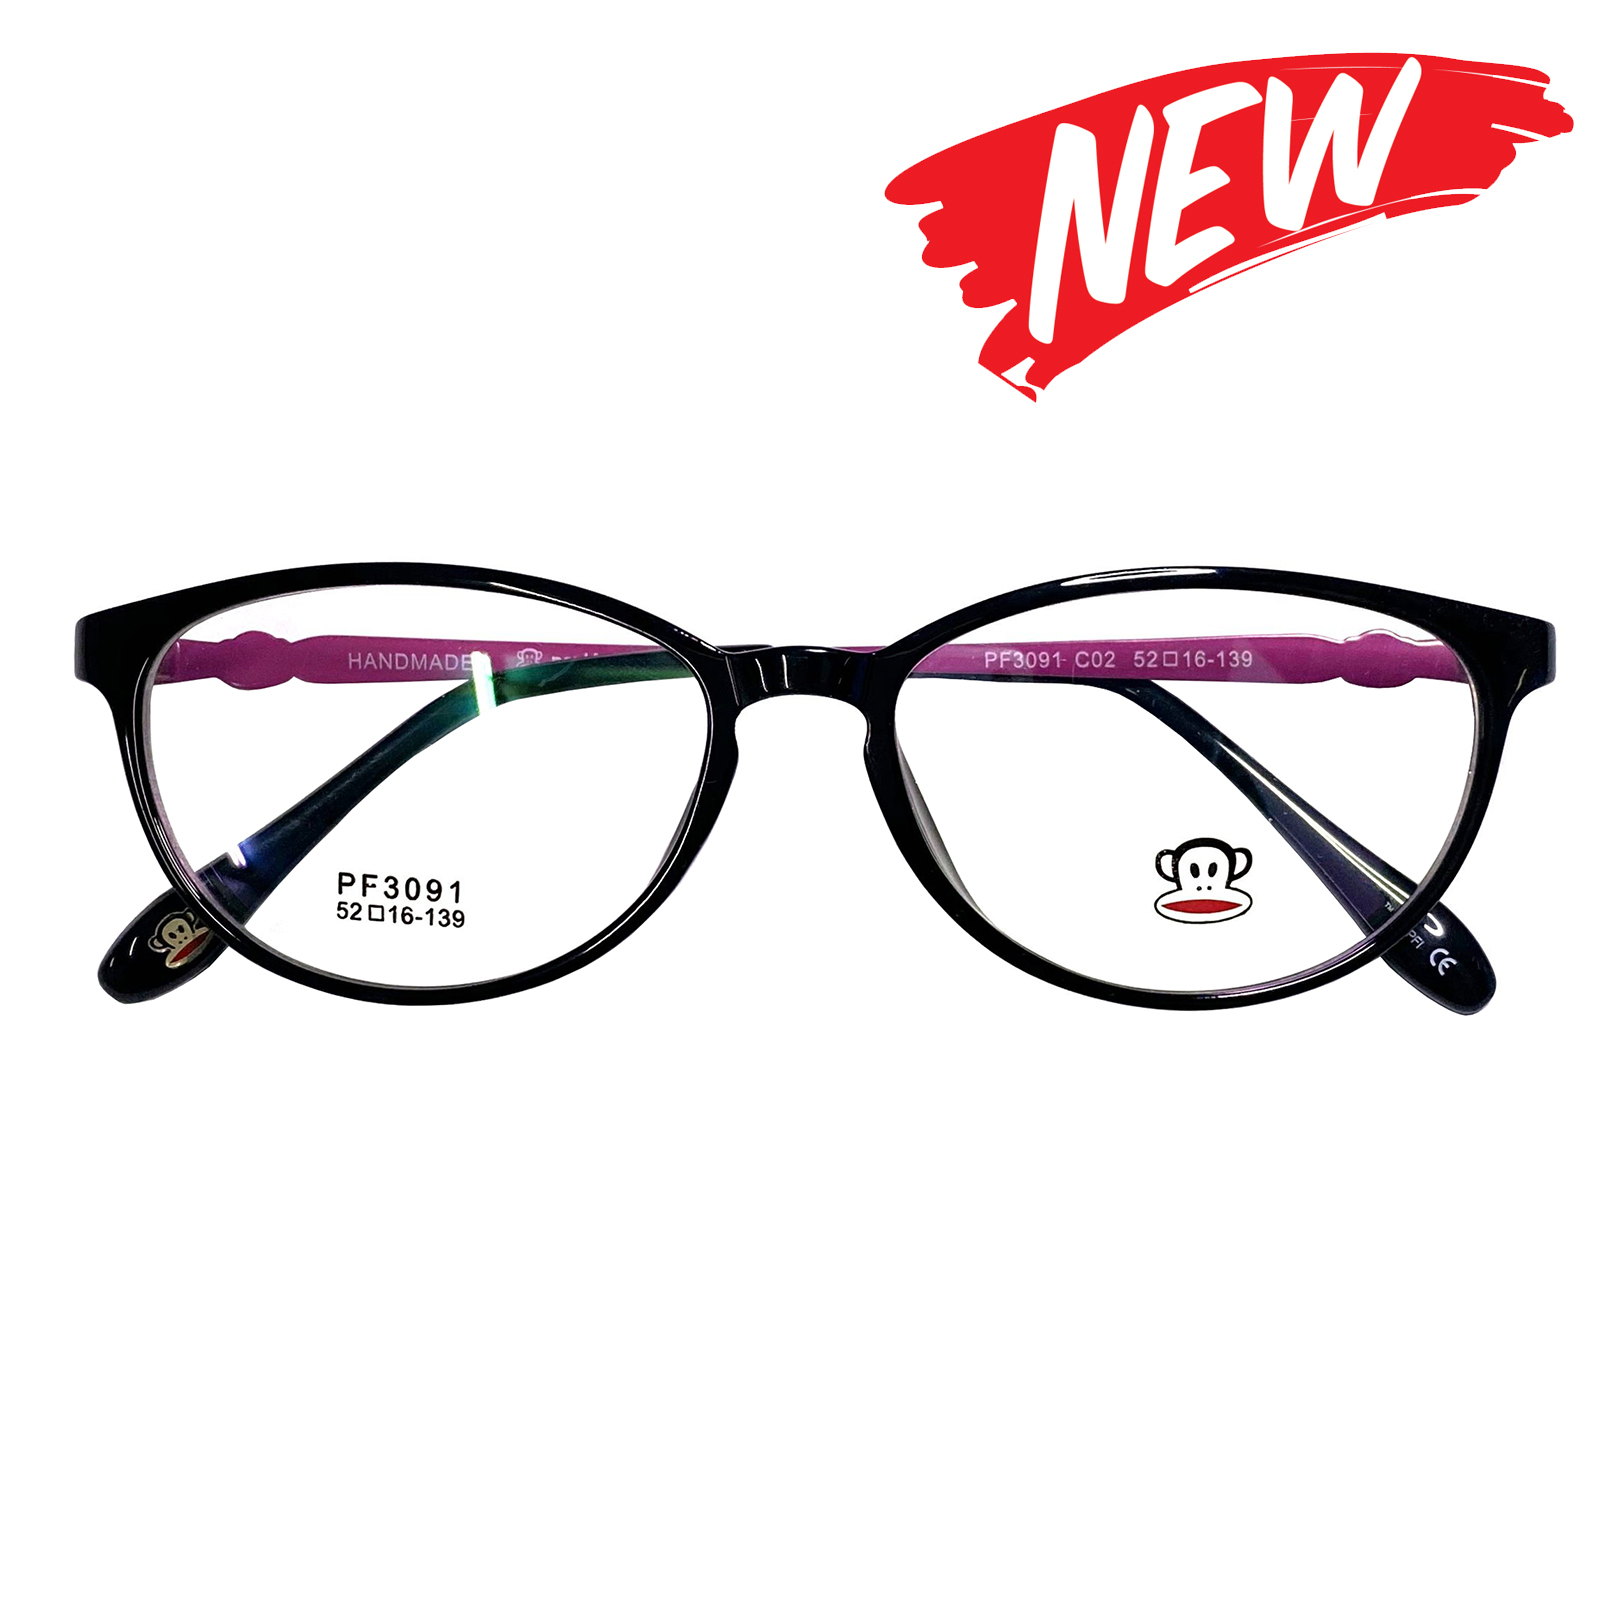 กรอบแว่นตา สำหรับตัดเลนส์ แว่นสายตา แว่นตา Fashion รุ่น Paul Frank 3091 กรอบเต็ม Rectangle ทรงรี ขาข้อต่อ วัสดุ TR 90 รับตัดเลนส์ทุกชนิด ราคาถูก